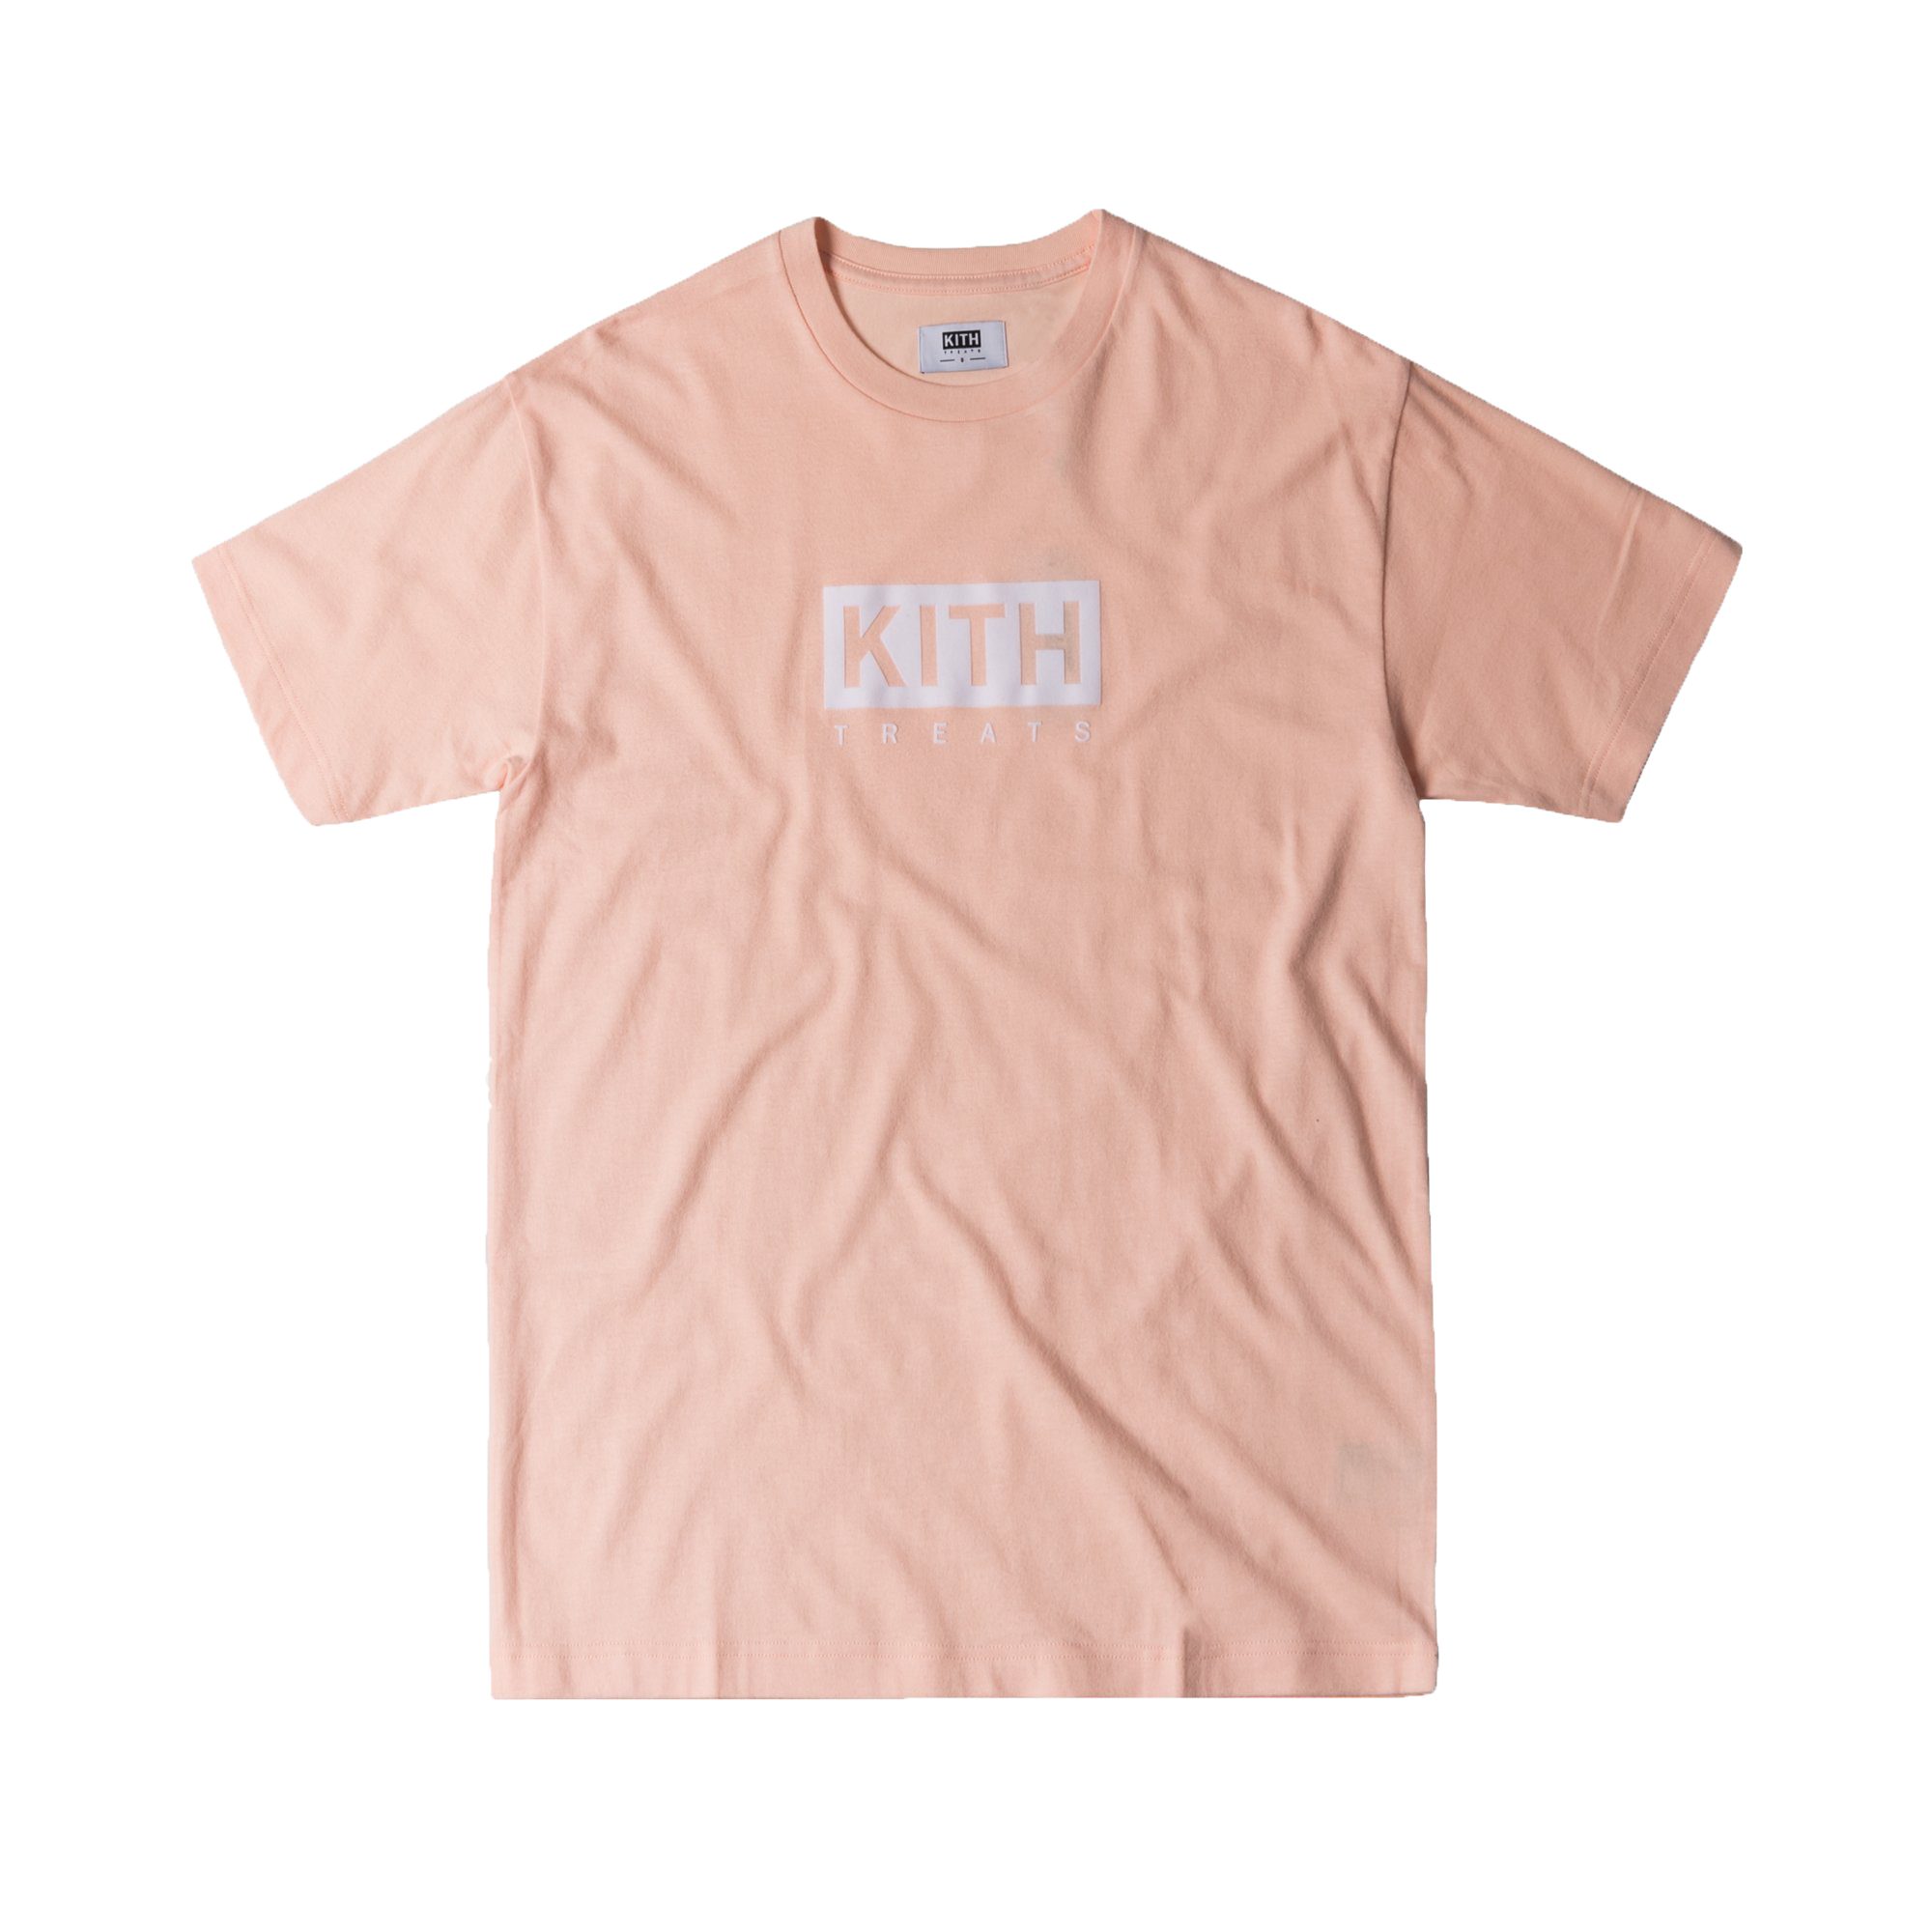 Kith Treats Tee Light Pink